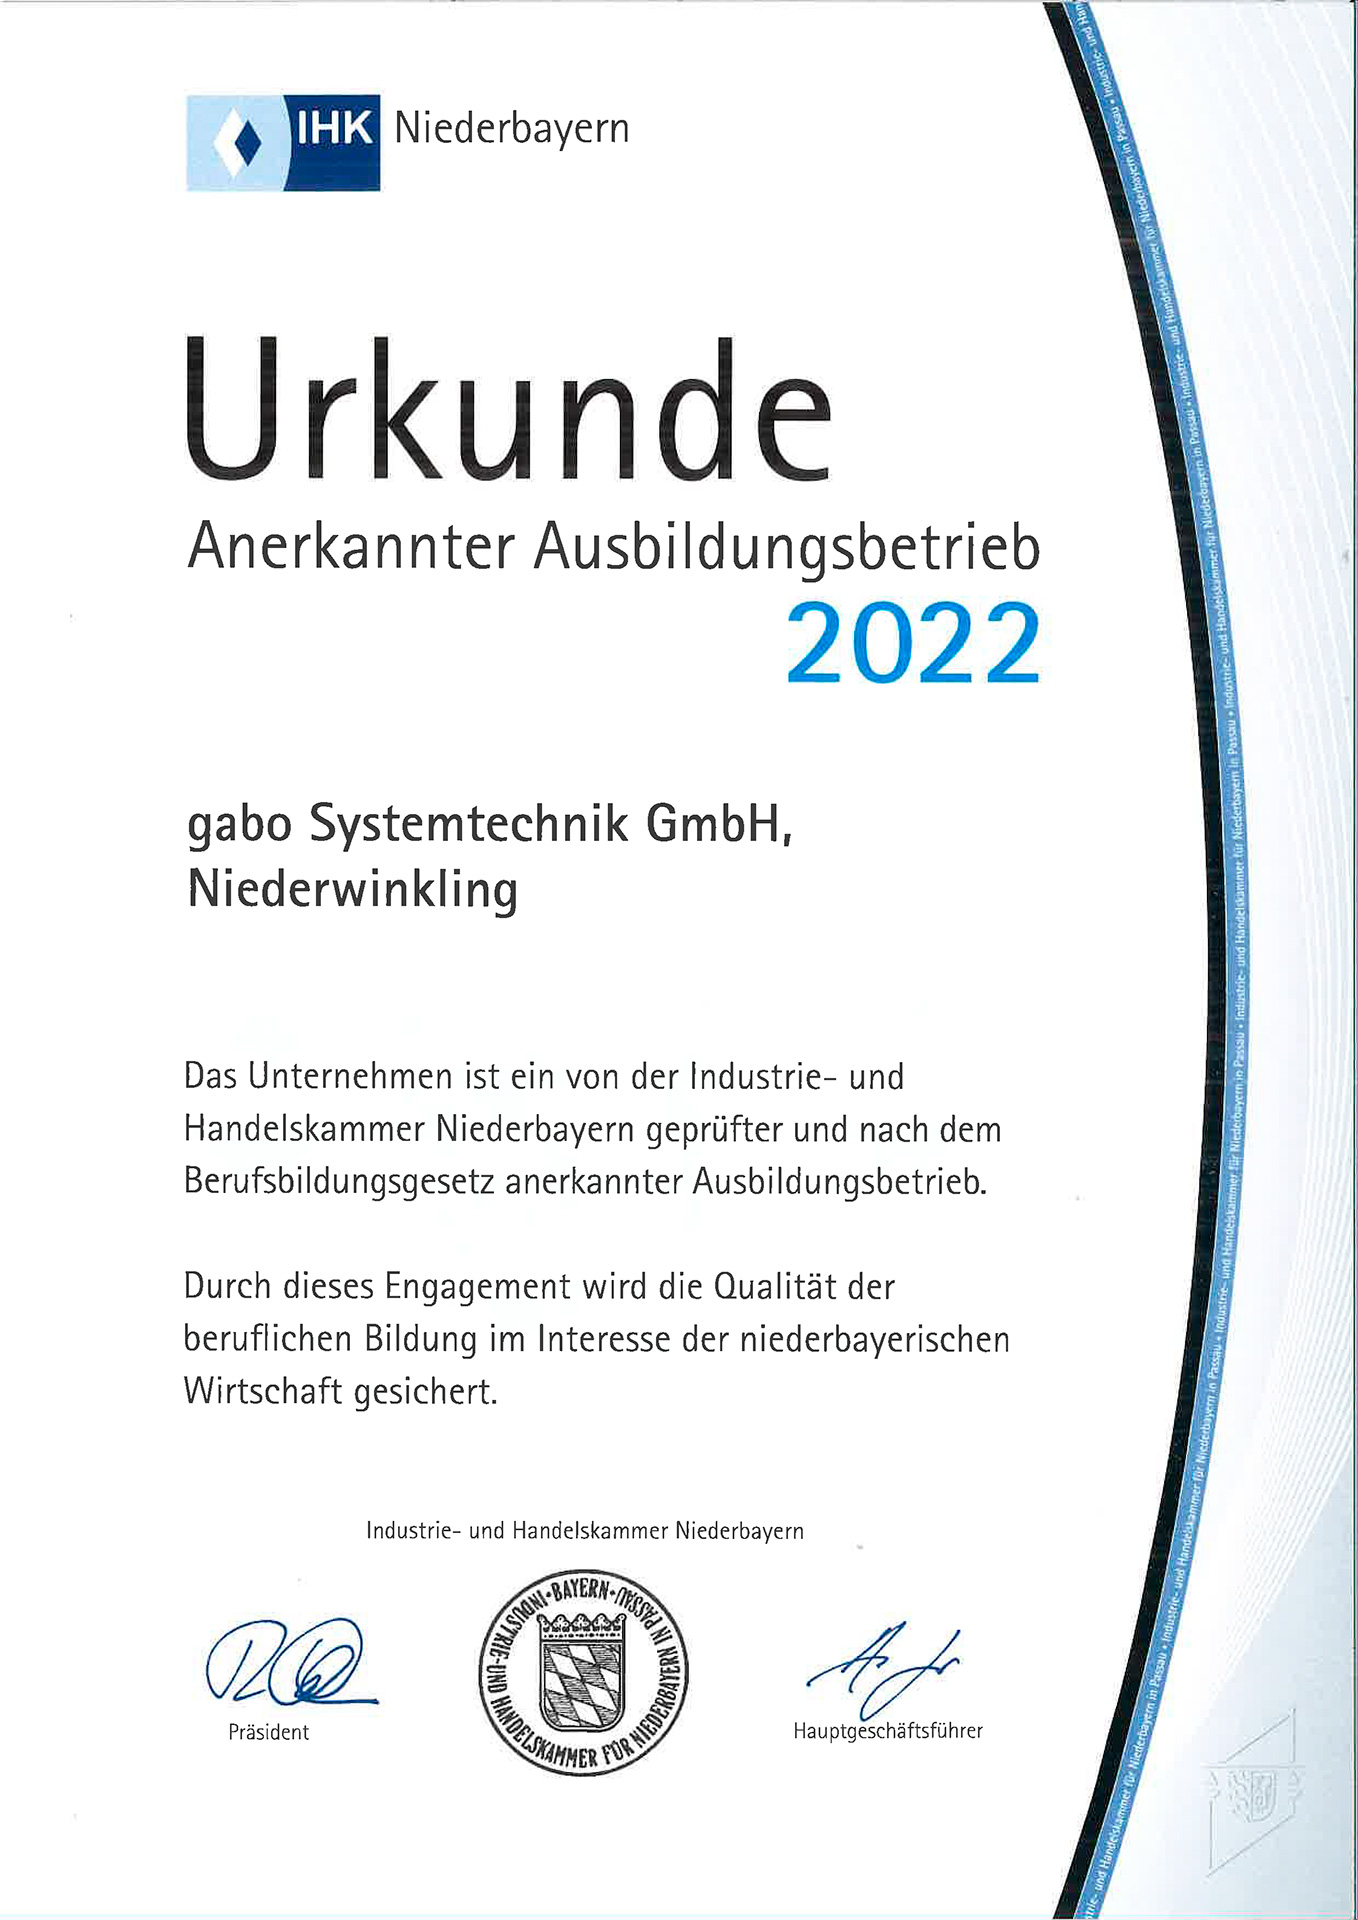 IHK Urkunde Anerkannter Ausbildungsbetrieb 2022